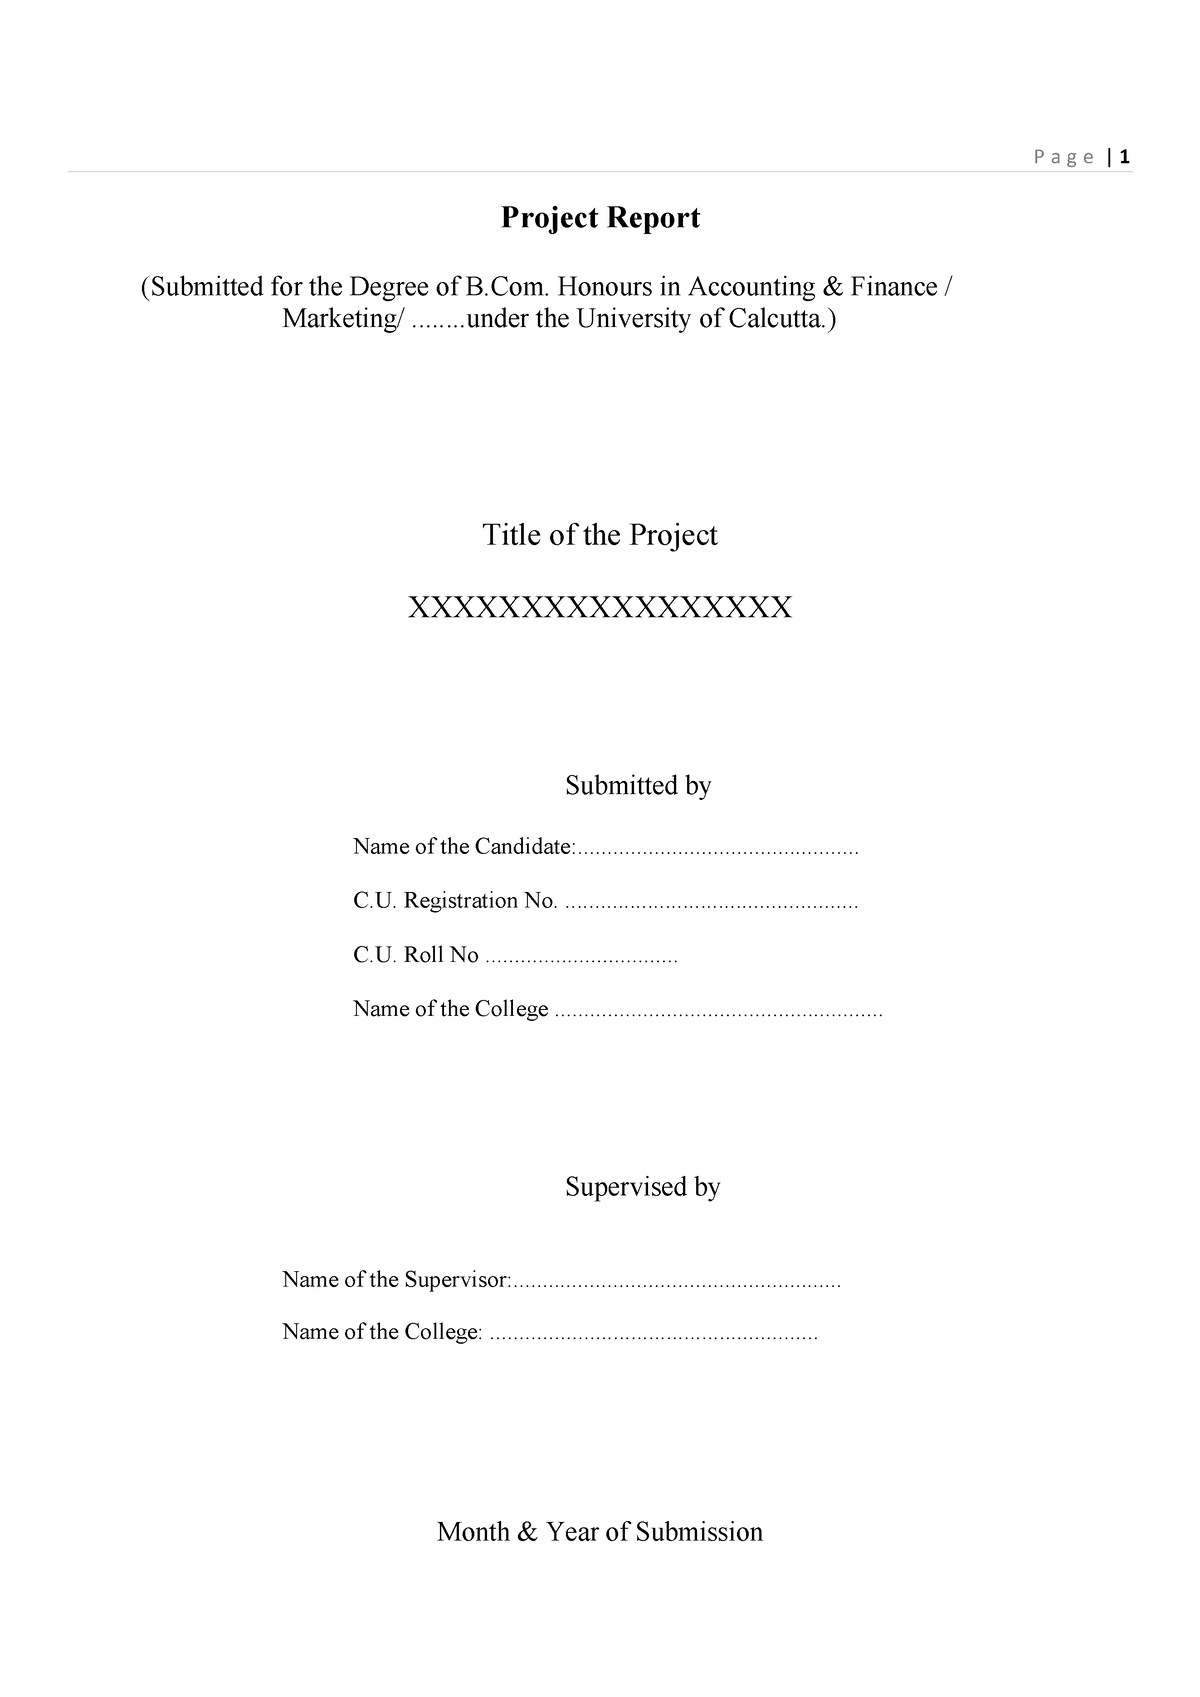 calcutta university research paper